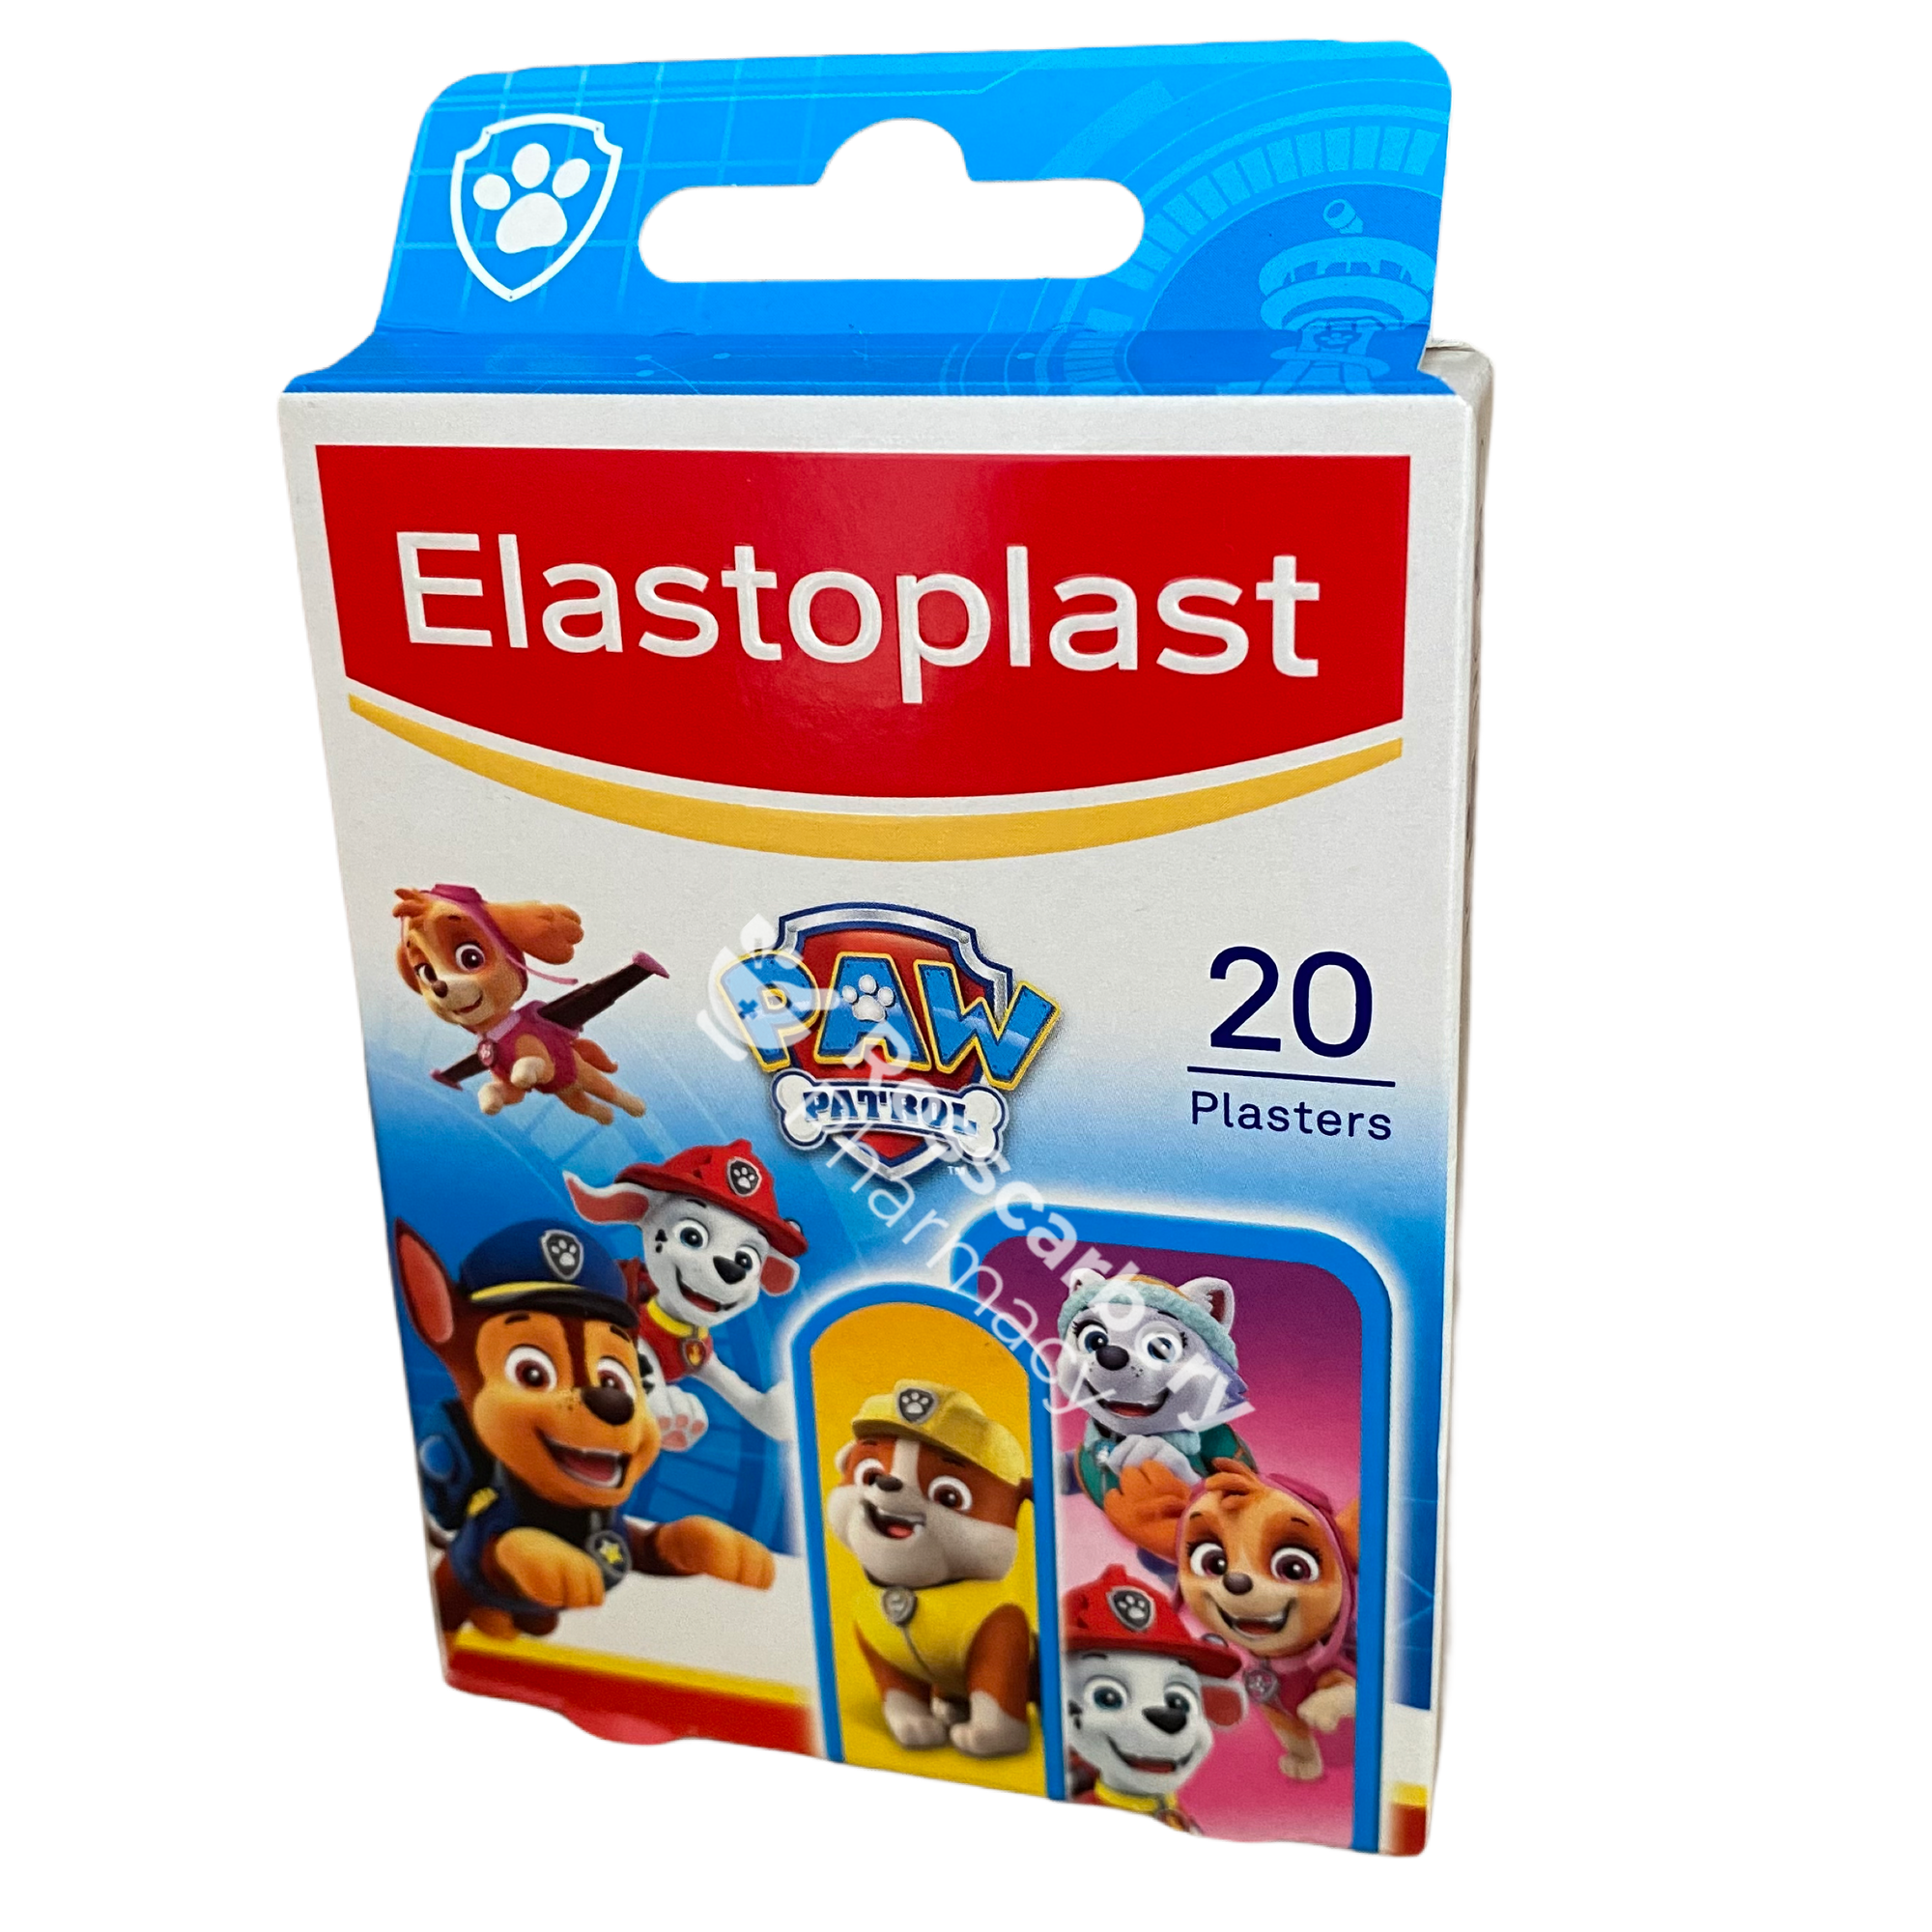 Elastoplast Kids Paw Patrol Plasters - 20 Plasters